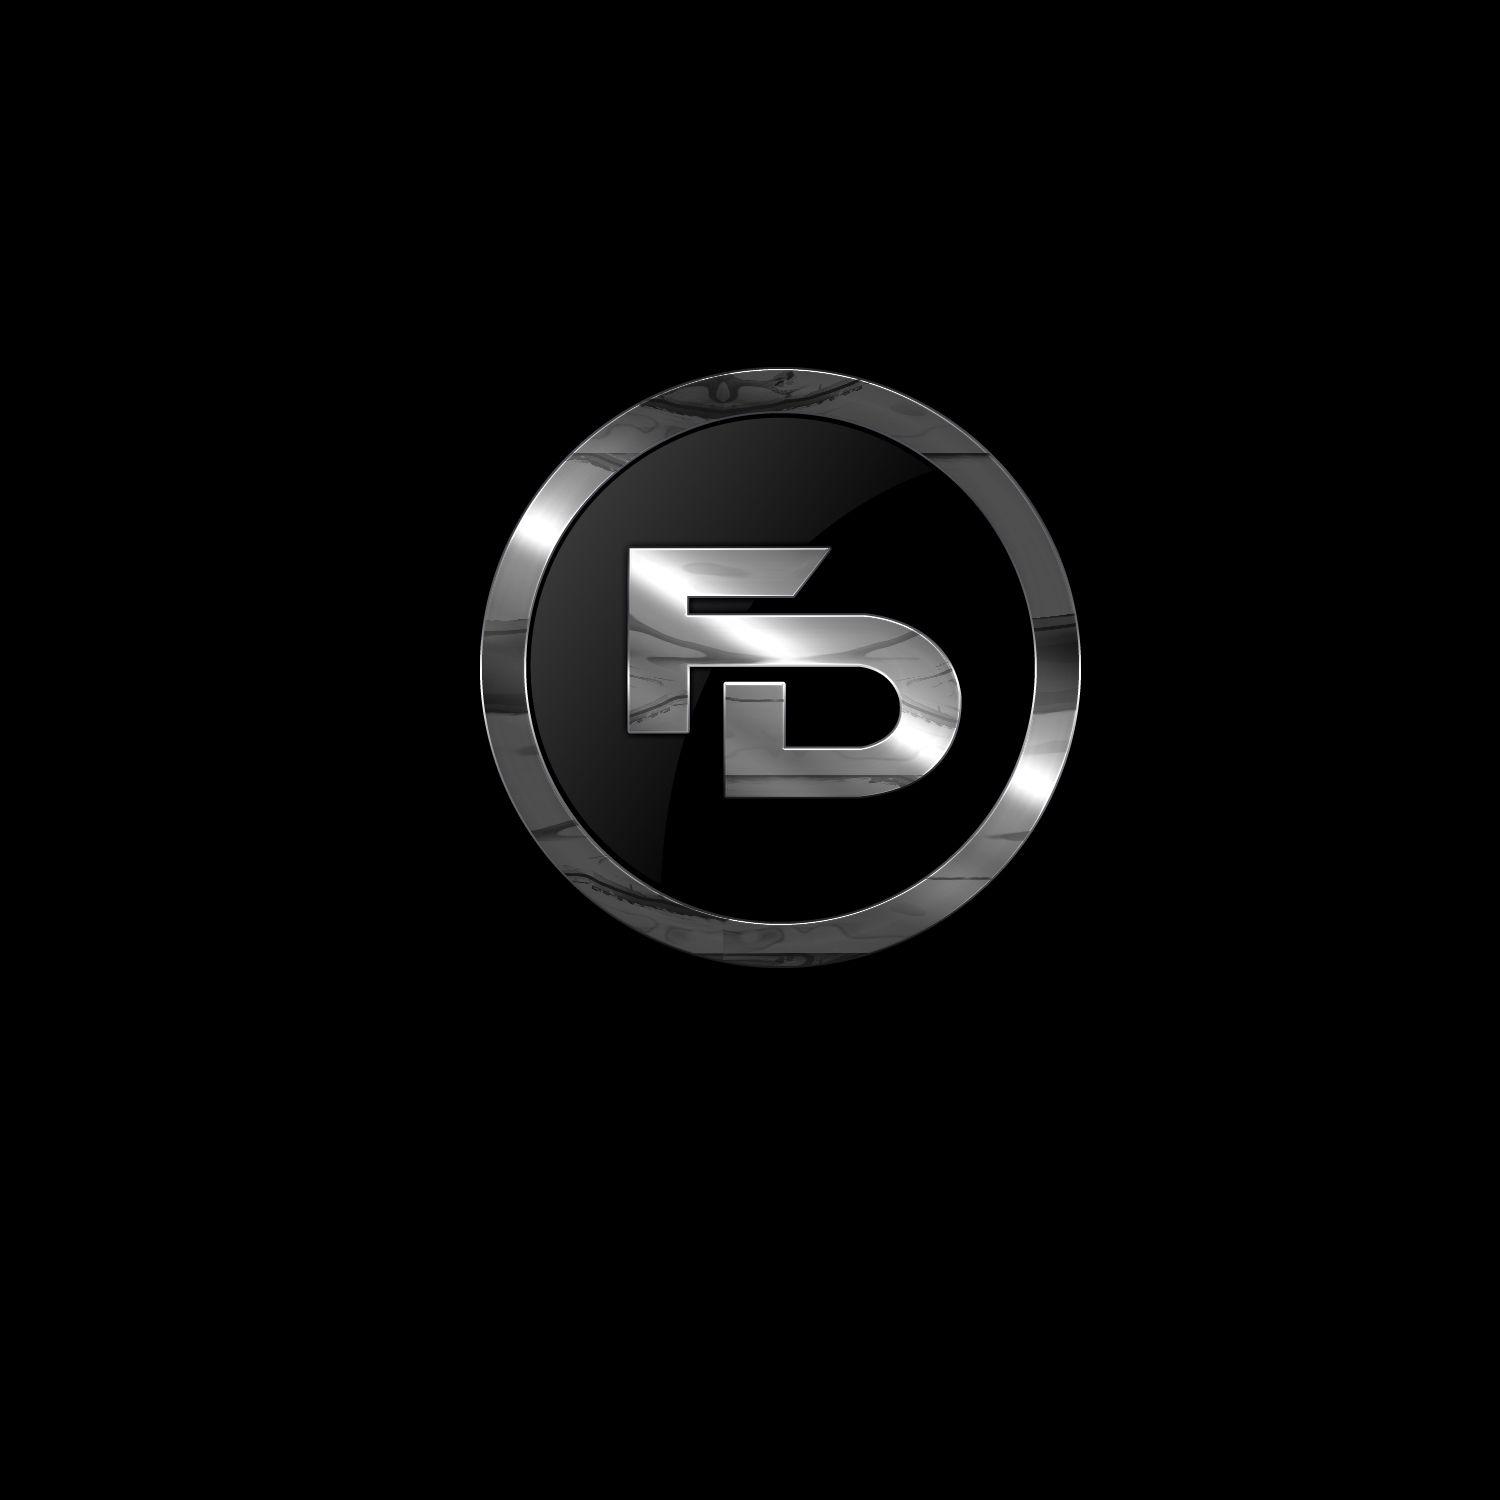 Fd Logo - Fd Logos